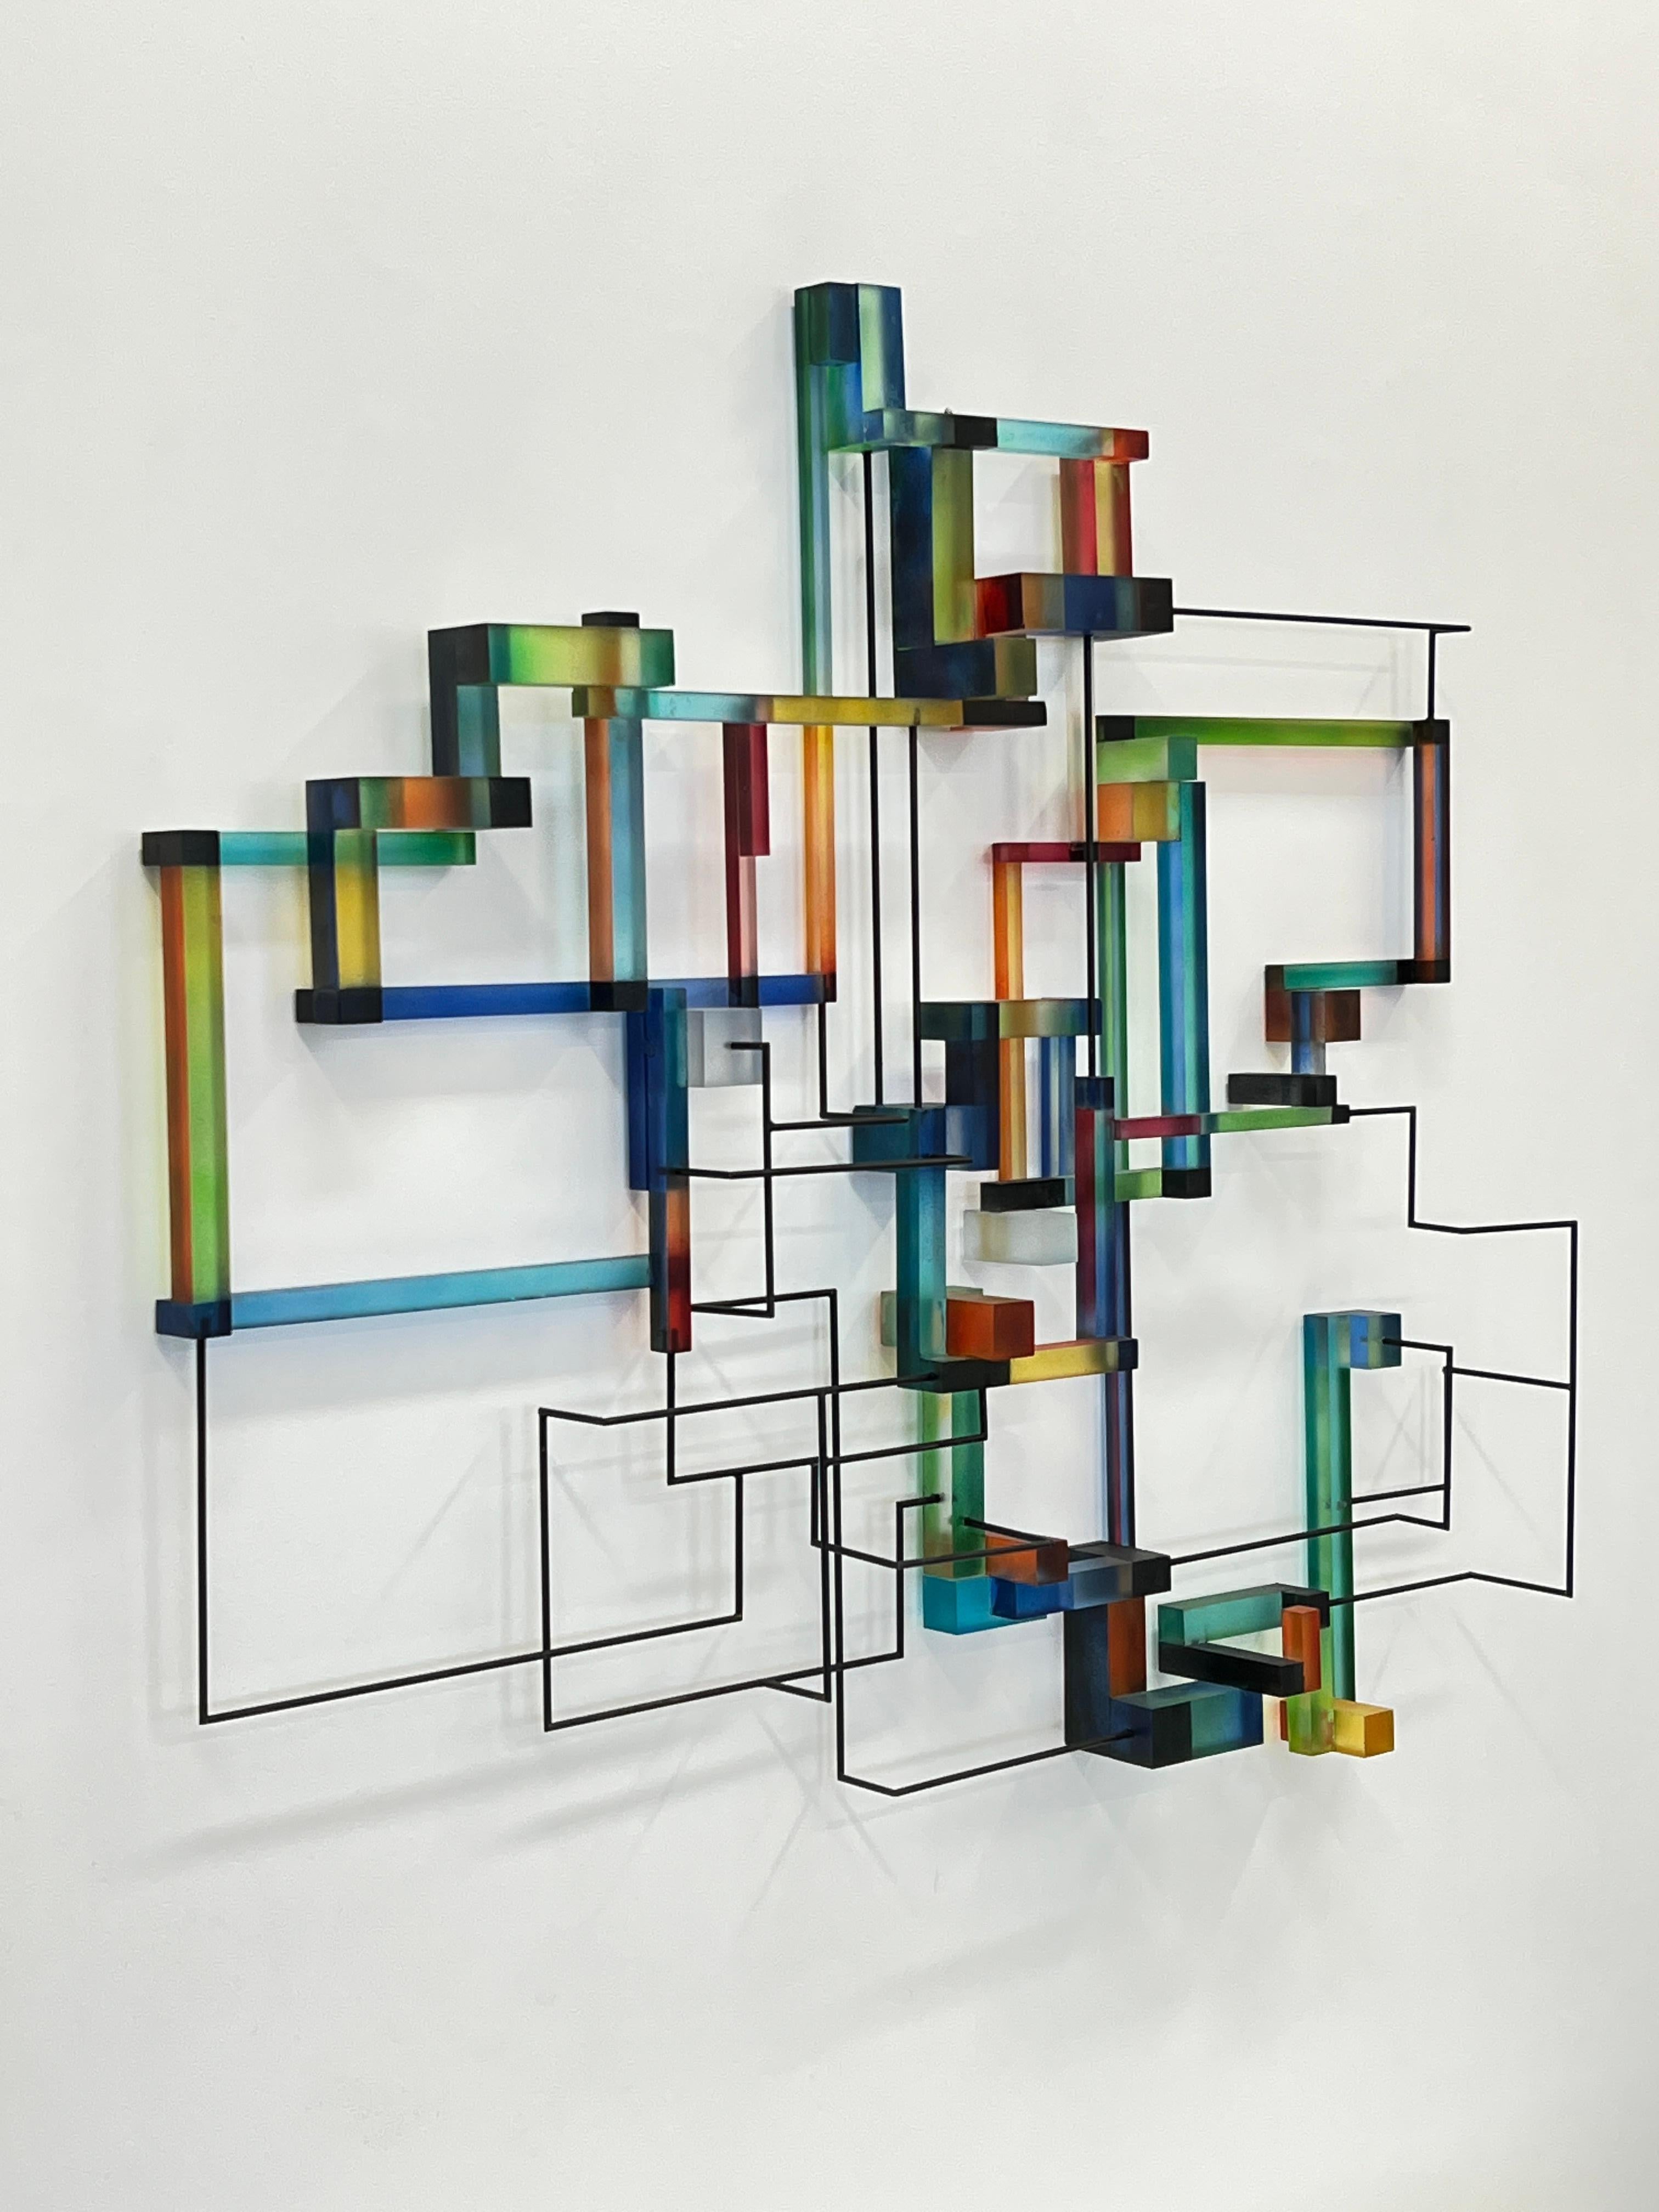 Prozor: zeitgenössische moderne abstrakte geometrische Skulptur – Sculpture von Greg Chann